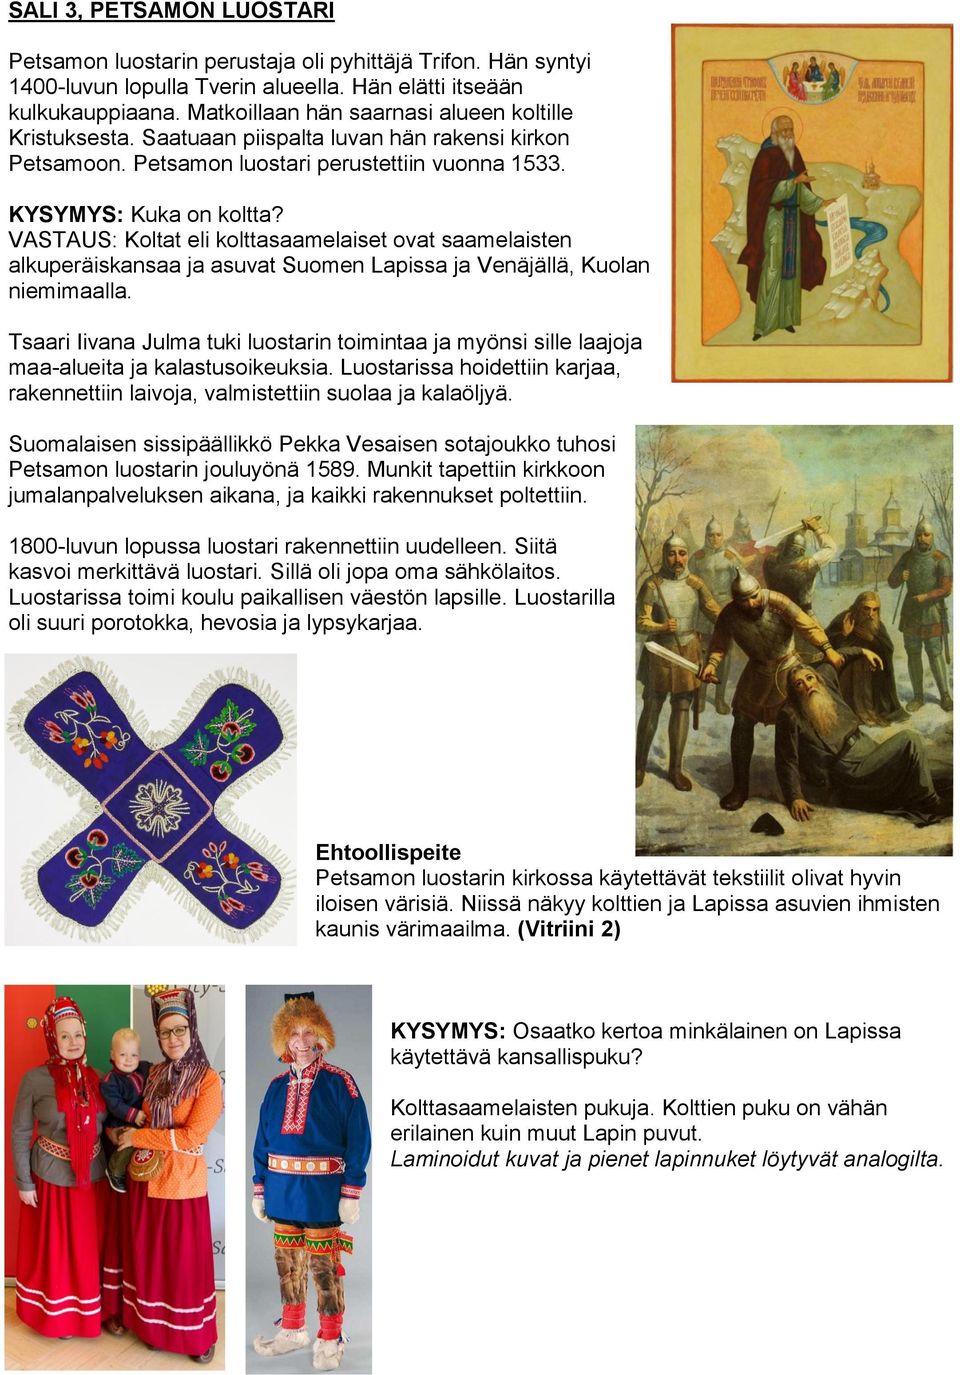 VASTAUS: Koltat eli kolttasaamelaiset ovat saamelaisten alkuperäiskansaa ja asuvat Suomen Lapissa ja Venäjällä, Kuolan niemimaalla.